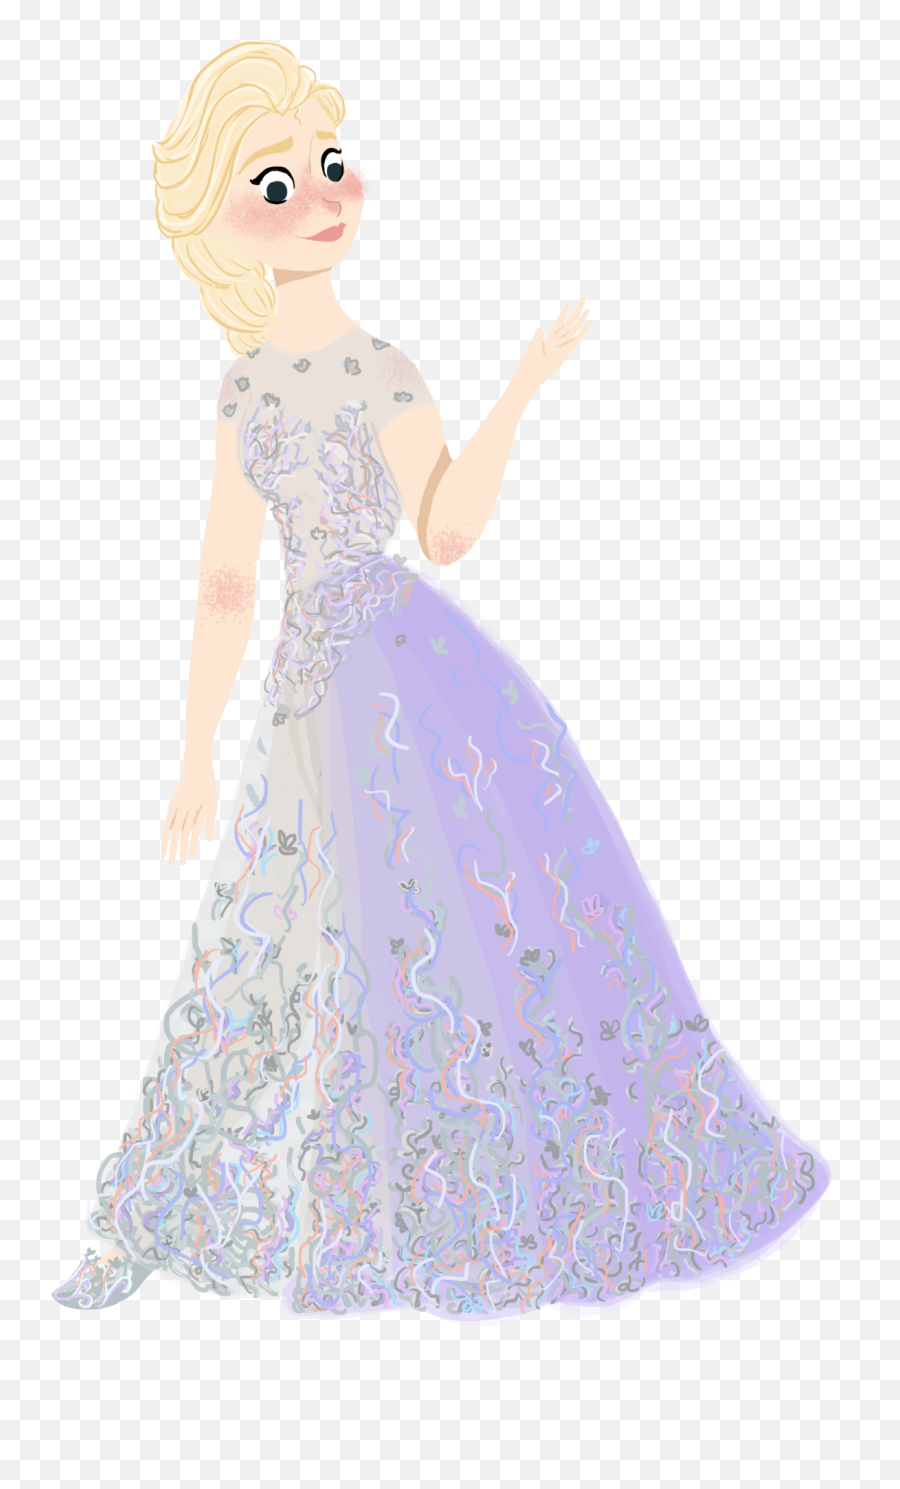 Frozen Elsa - Frozen Dress Concept Art Transparent Png Illustration,Elsa Frozen Png